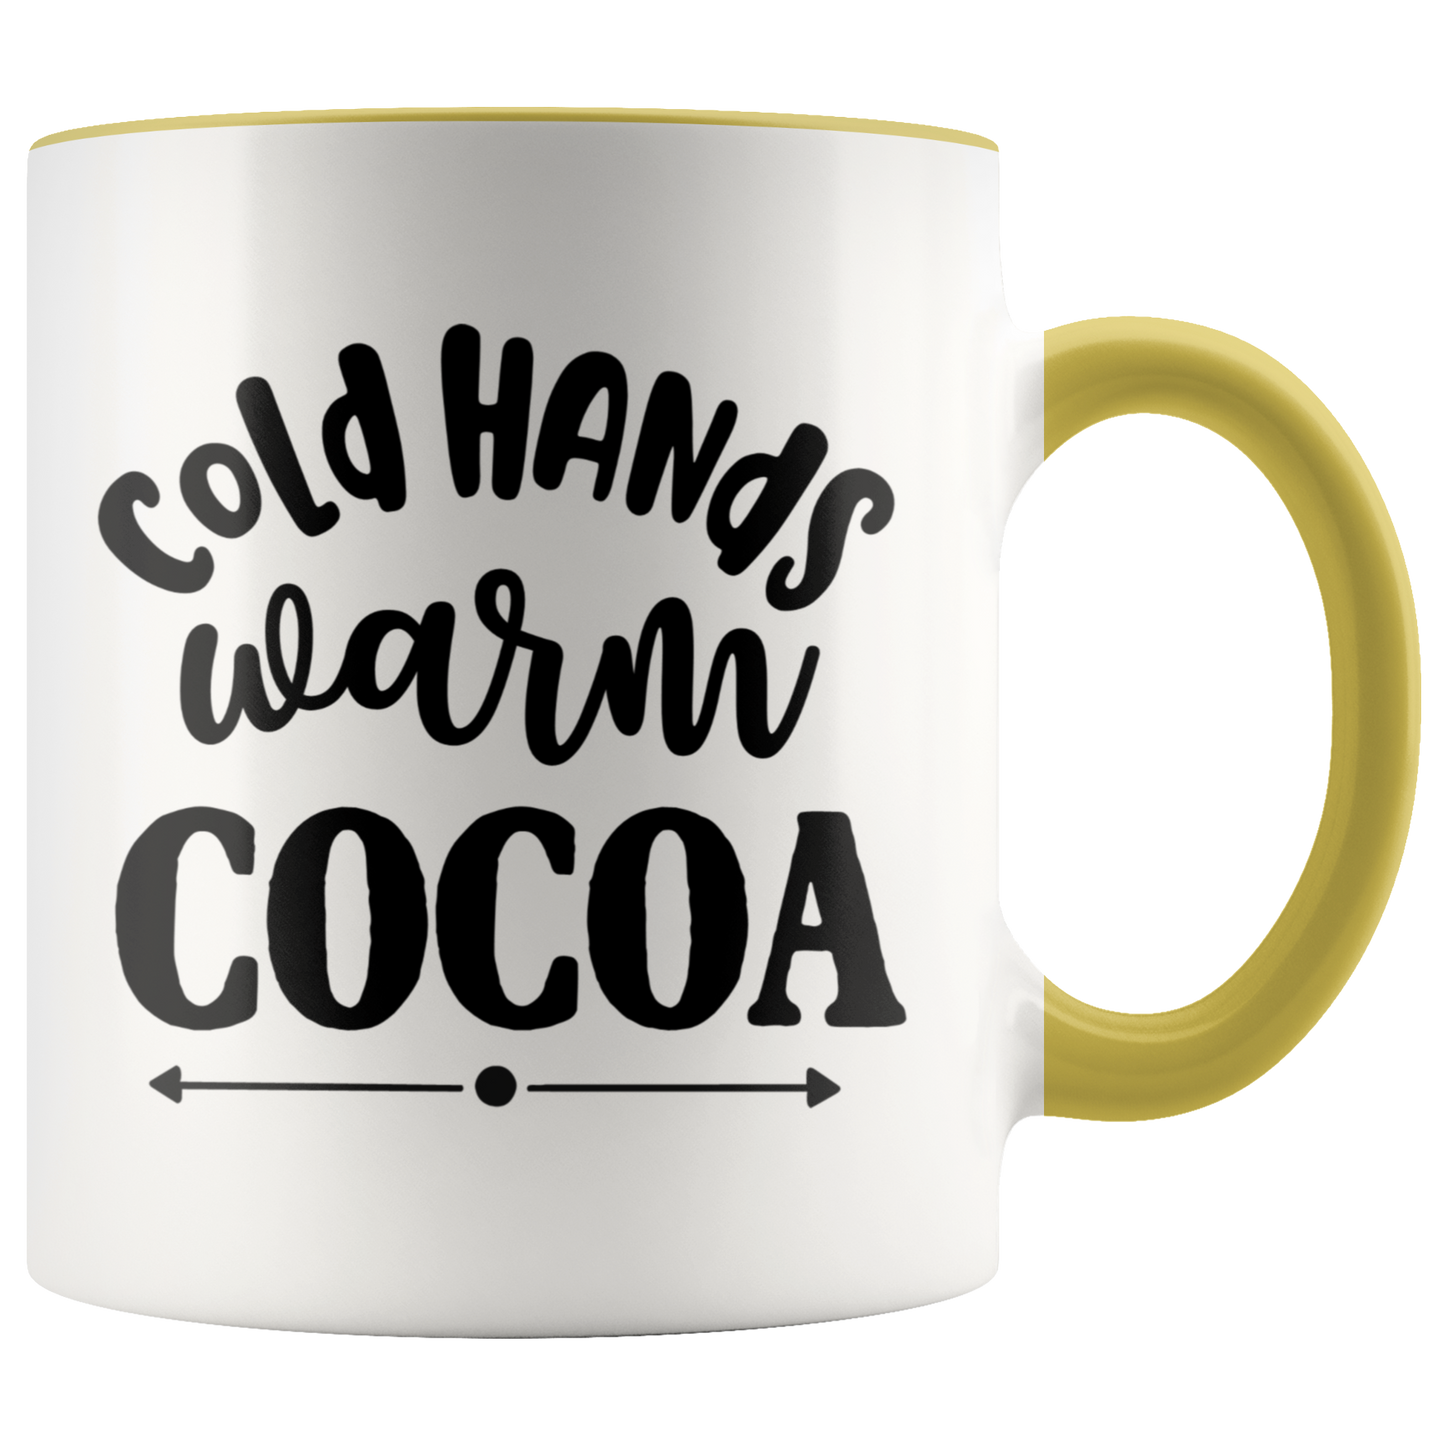 Christmas Gift Cocoa Mug Coffee Mug Funny Mug Holiday Gift Mug Christmas Mug Winter Mug